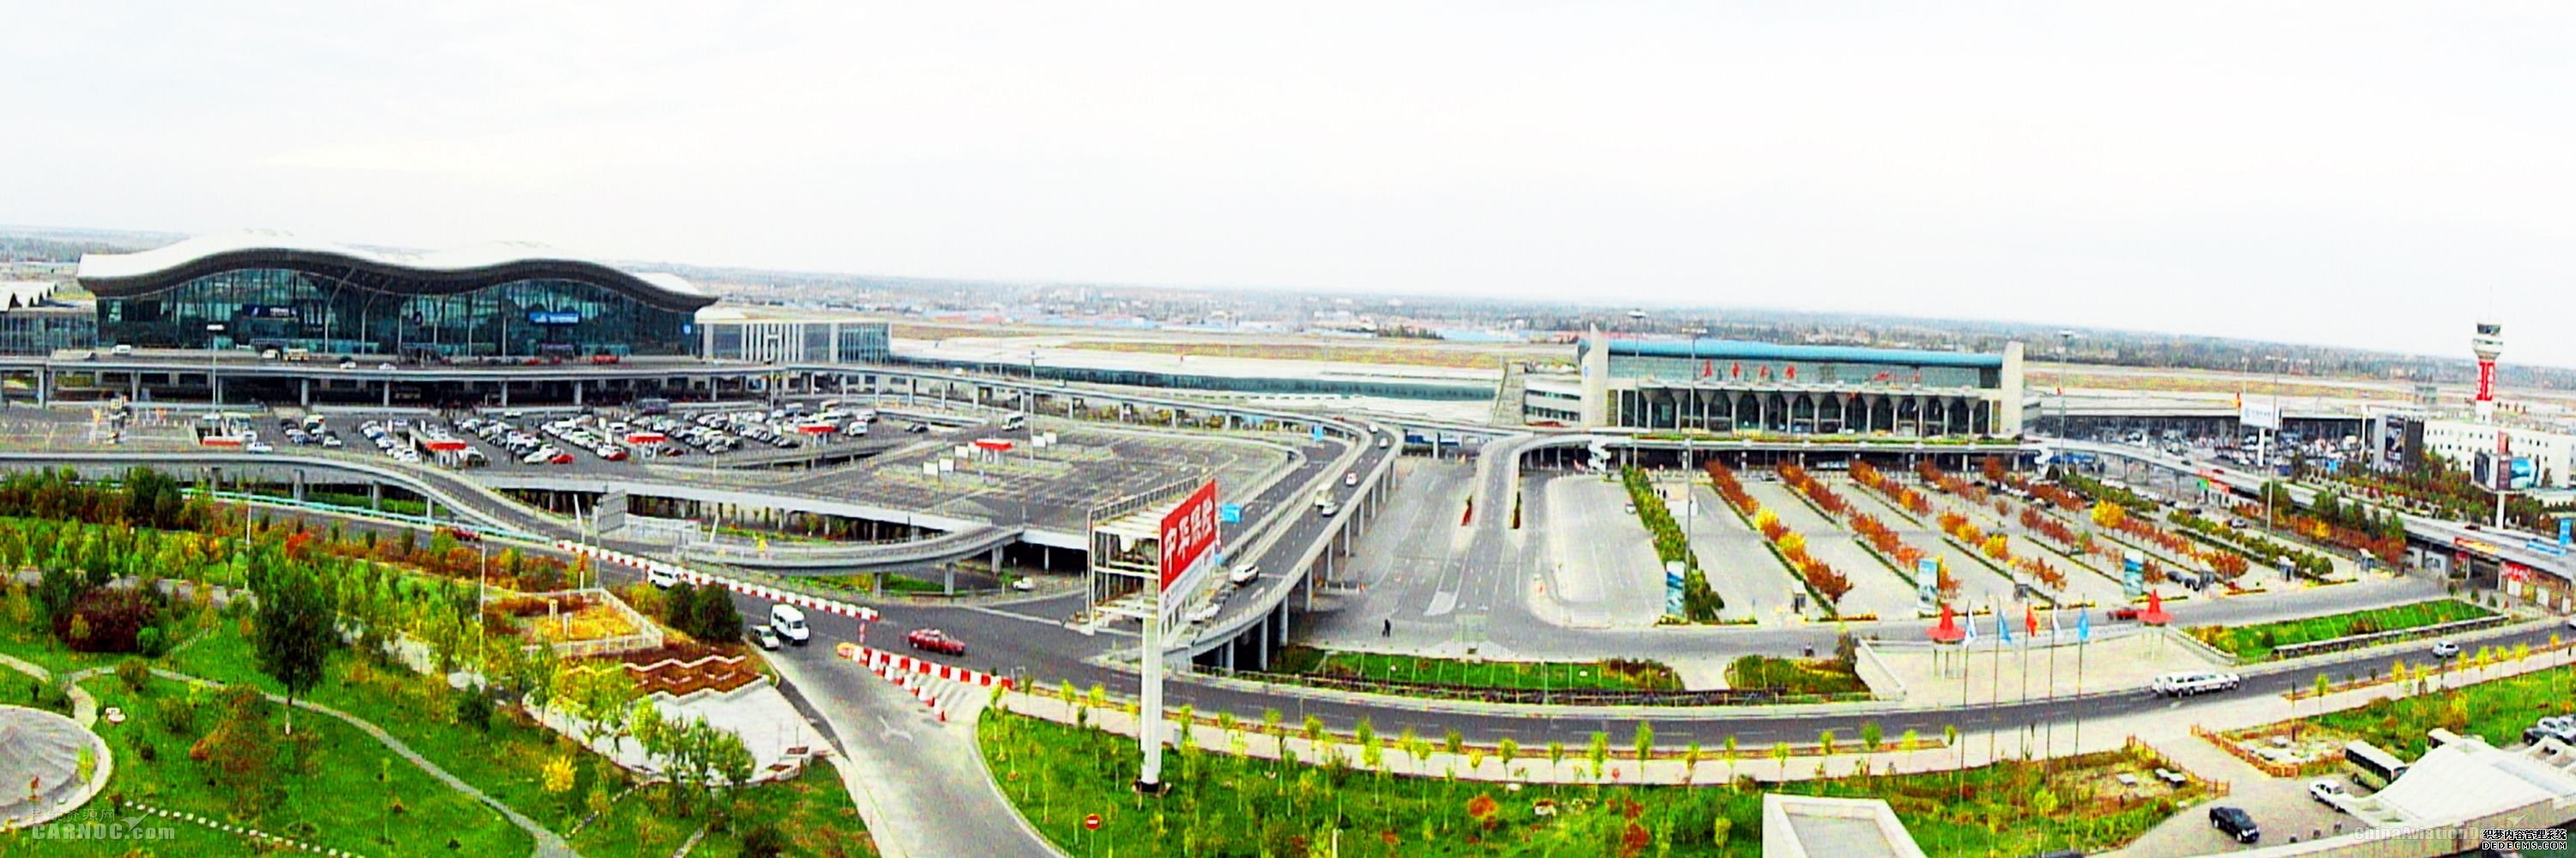 新疆机场集团1月航班放行正常率88.8%